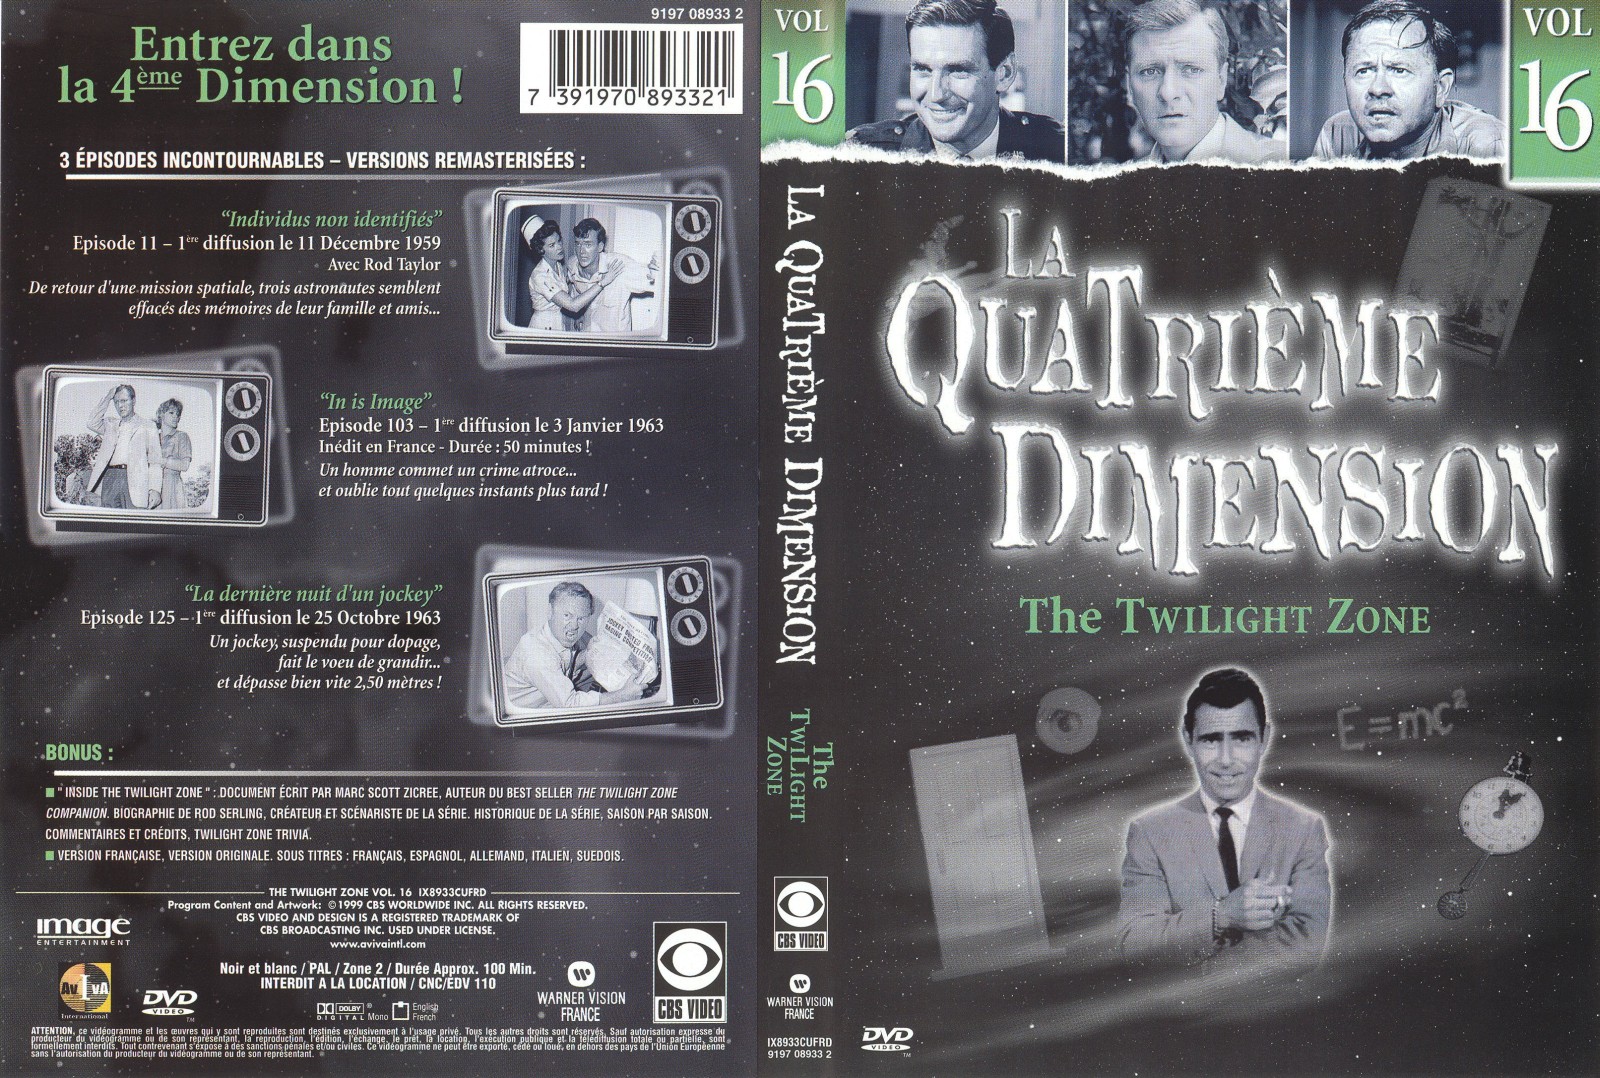 Jaquette DVD La quatrieme dimension vol 16